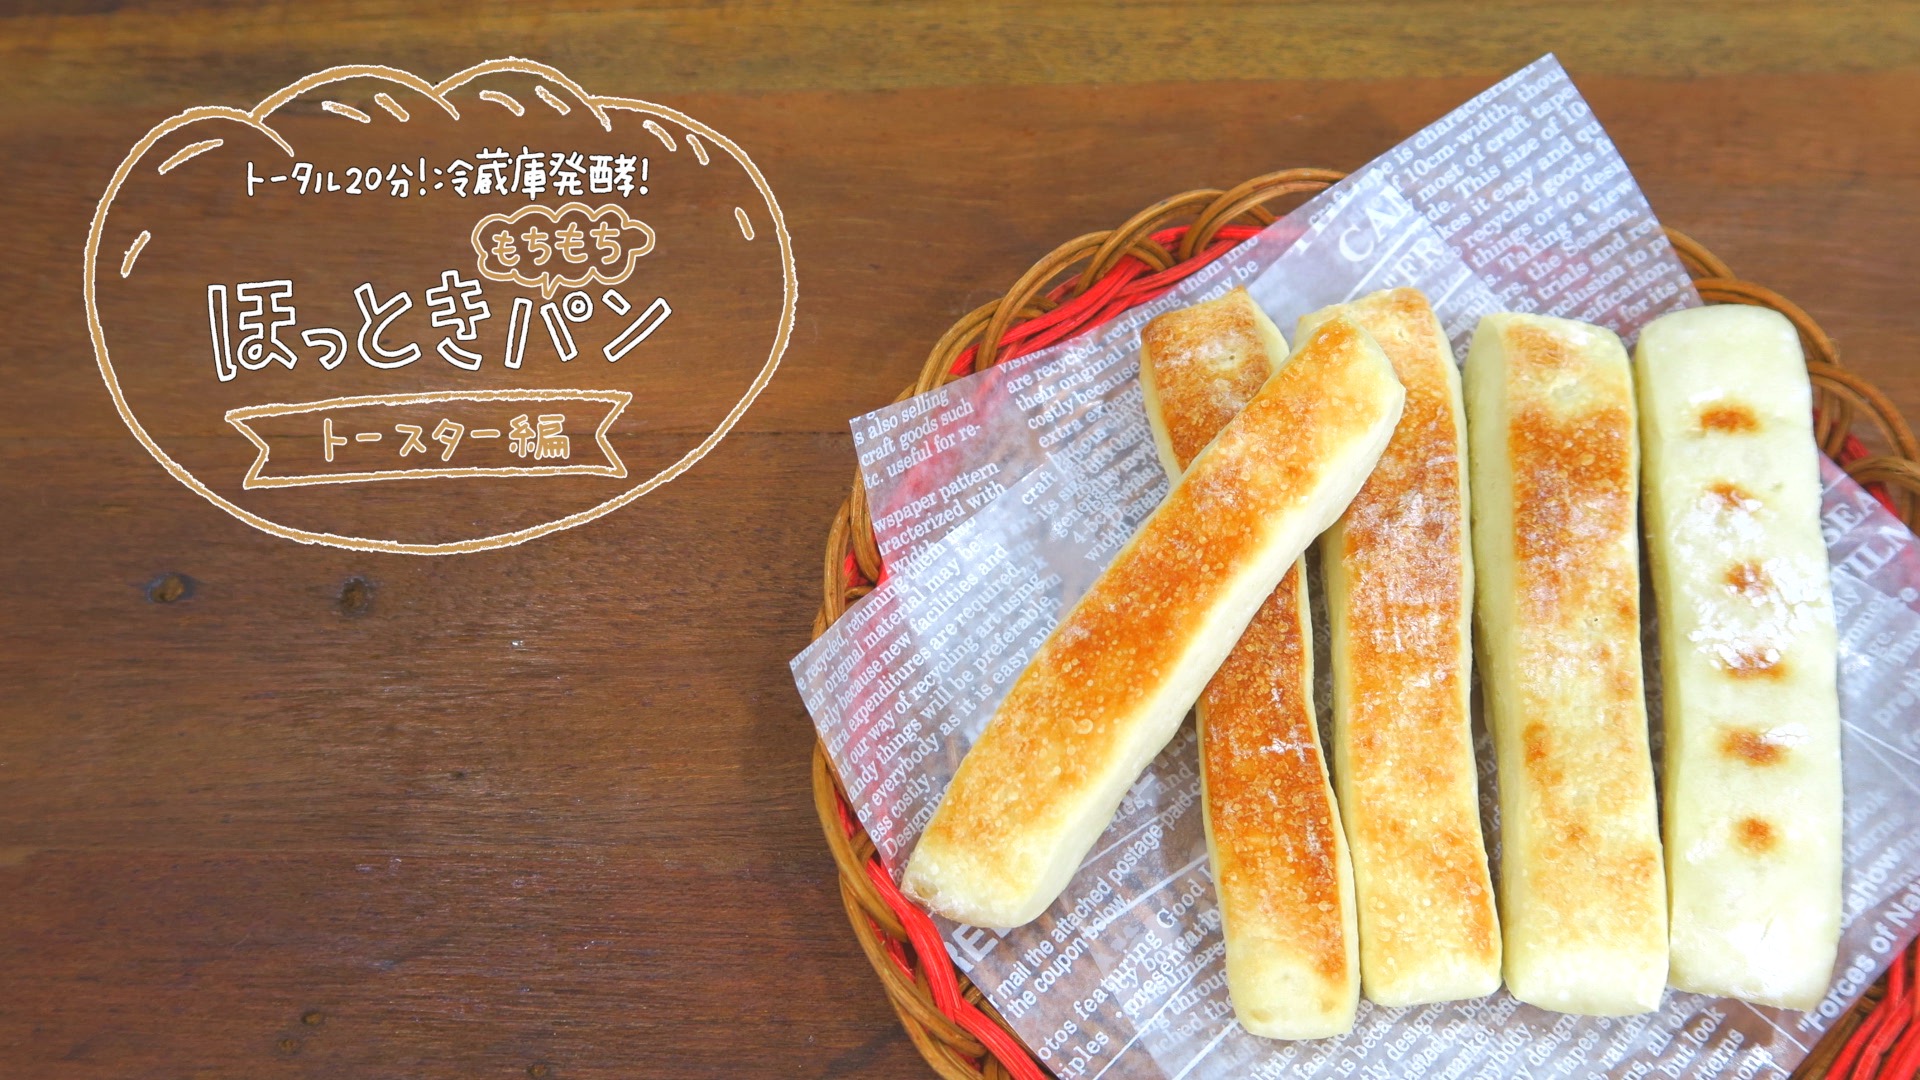 トースターで焼けるスティックパン 作業時間分 初心者でも簡単 パンレシピ ほっとき もちもちパンシリーズ ライフシアター Life Theatre Tokyo Headline